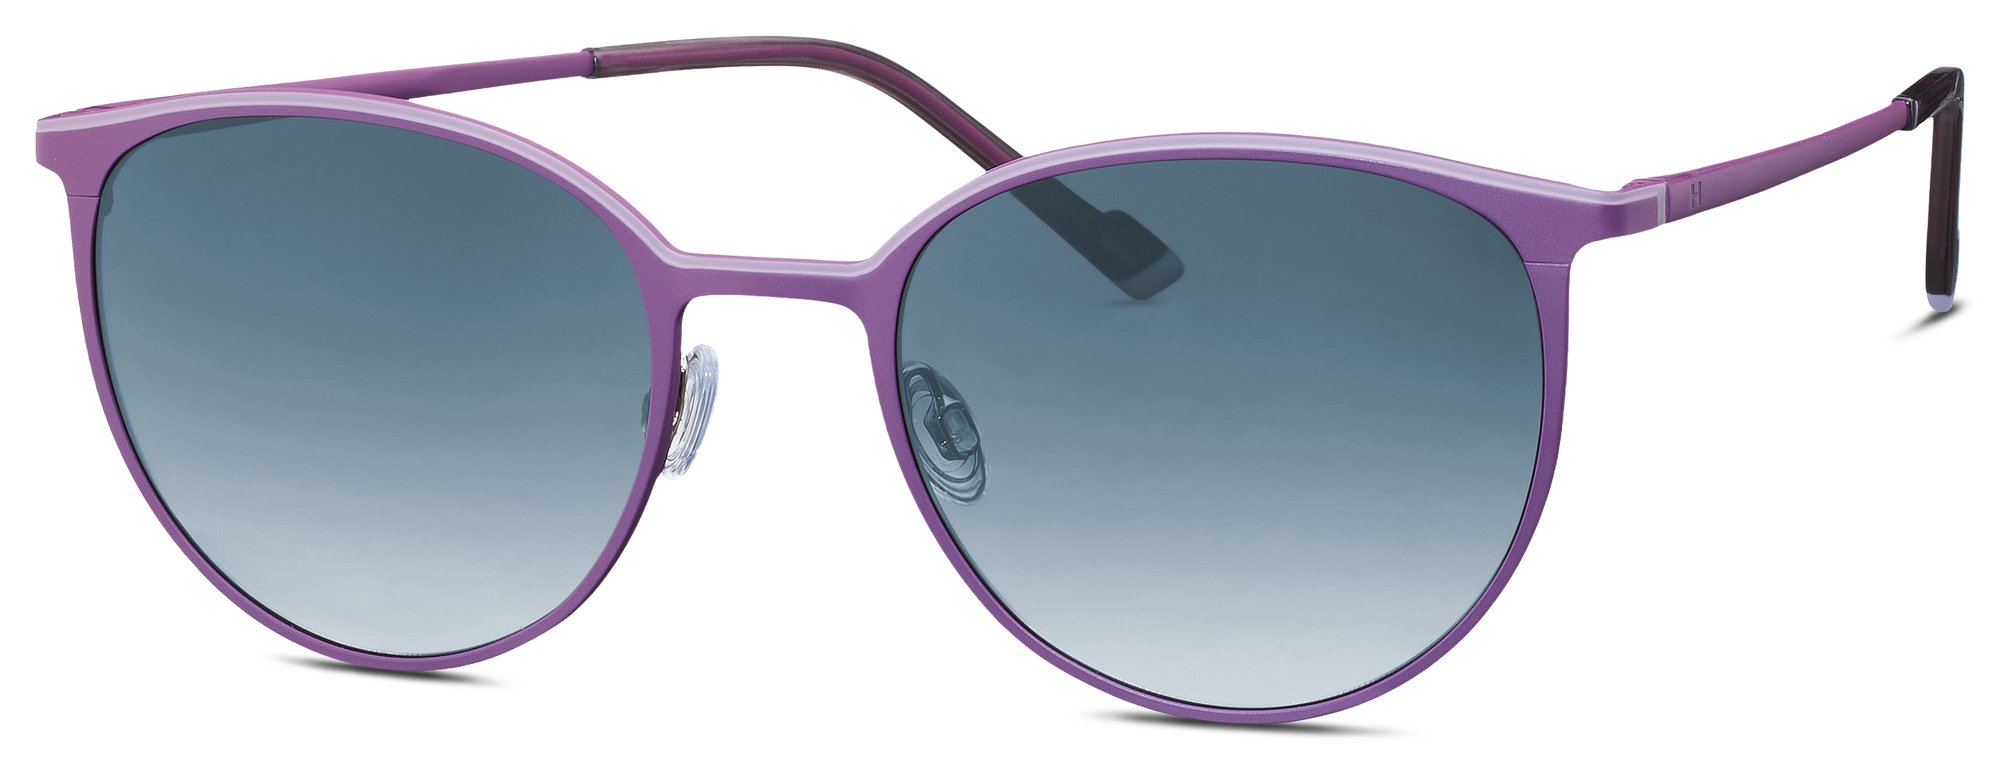 Das Bild zeigt die Sonnenbrille 585336 50 von der Marke Humphrey‘s in lila.